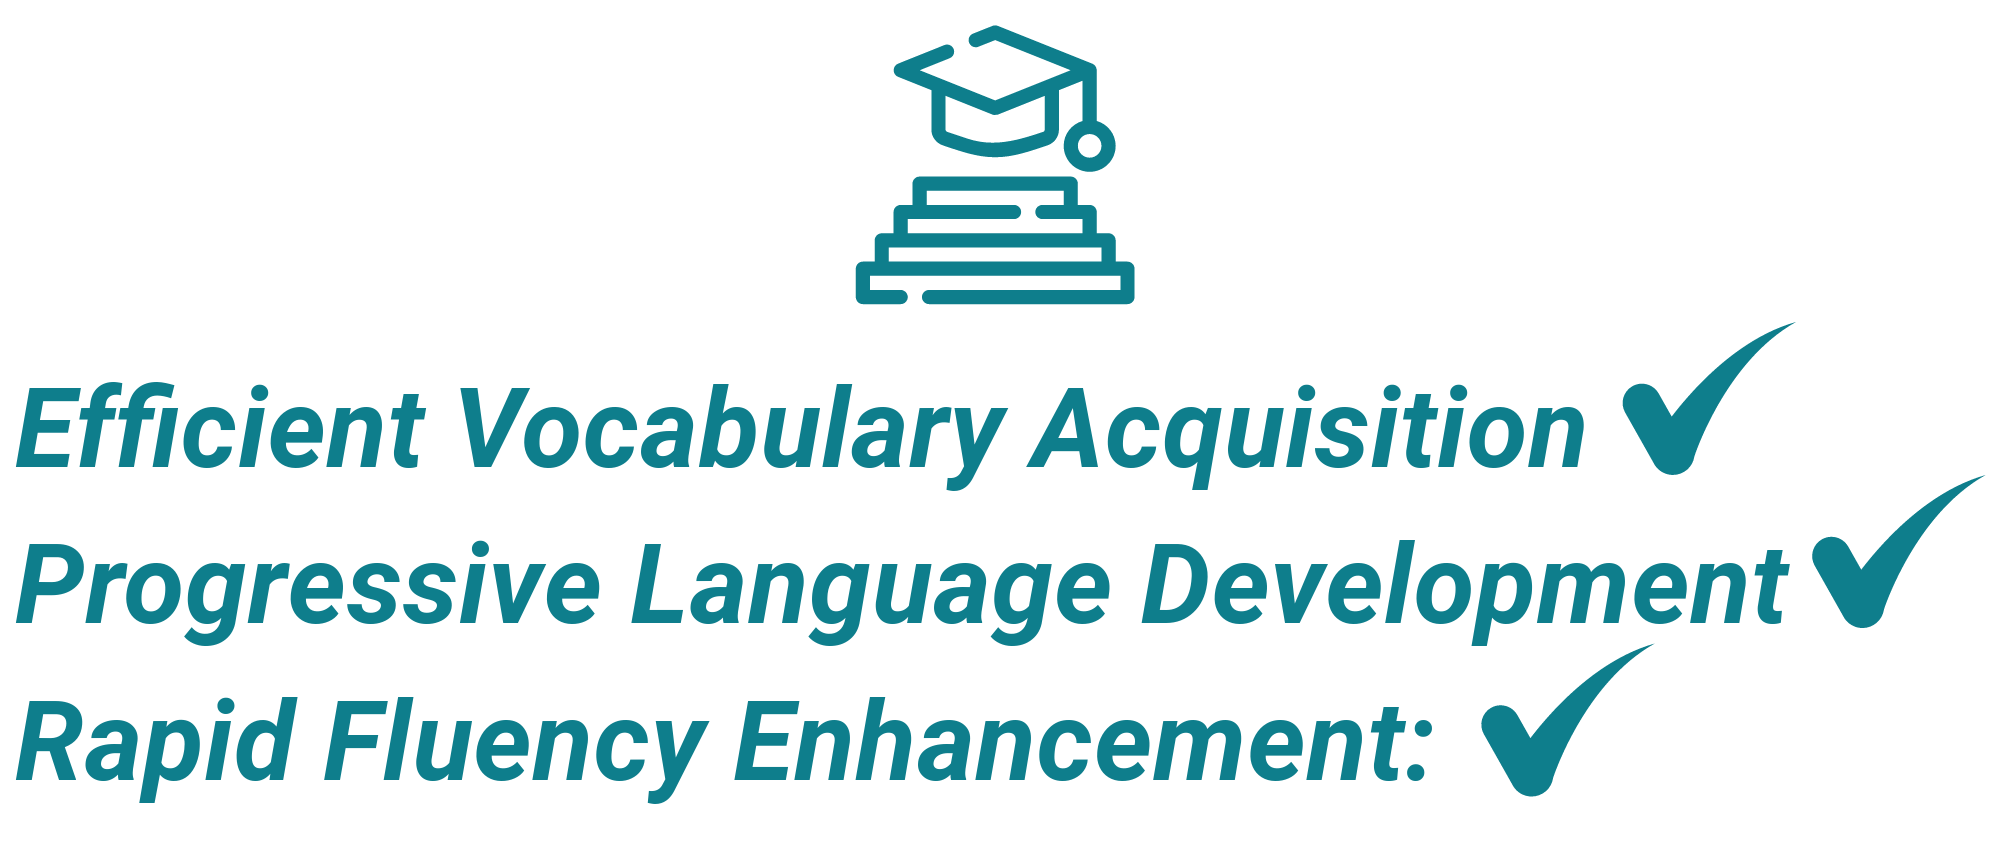 Motivational content: Efficient Vocabulary Acquisition, Progressive Language Development, Rapid Fluency Enhancement